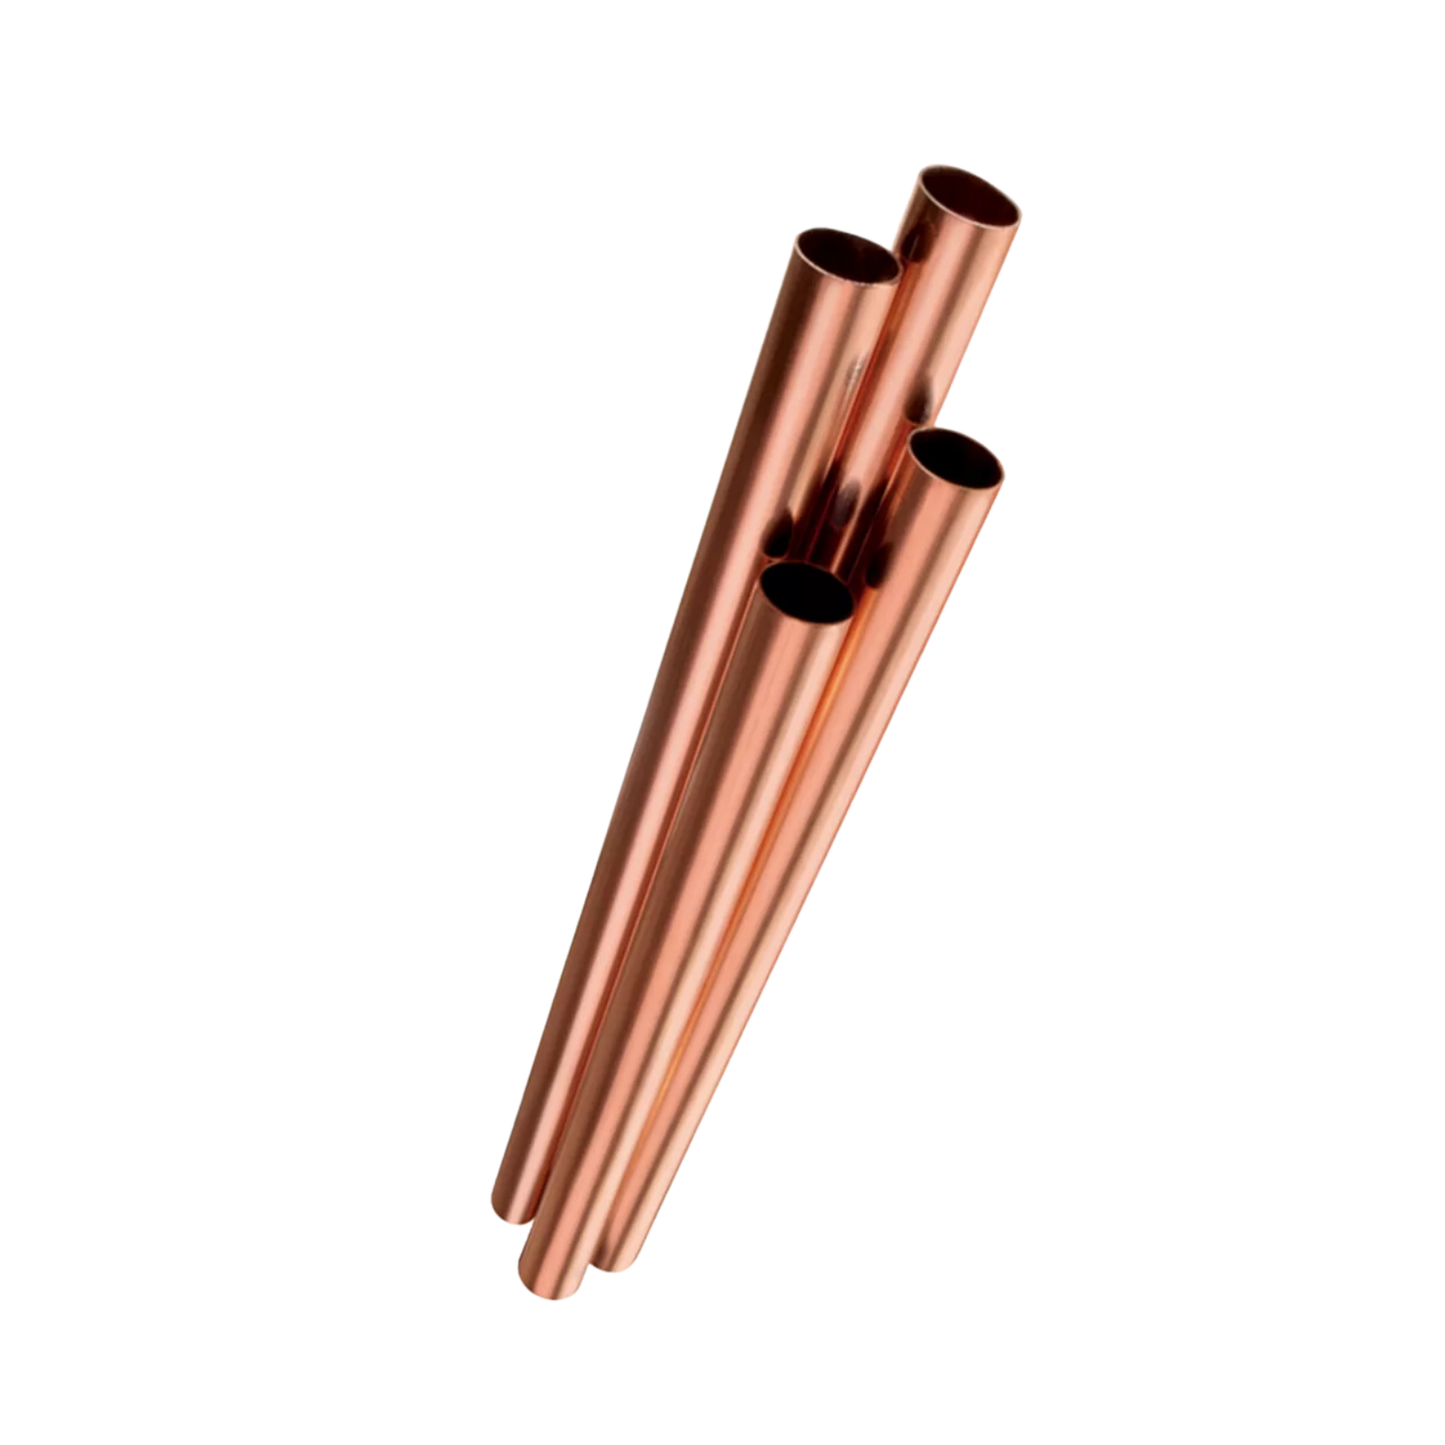 aire acondicionado tubos de cobre suave 1m/3.28ft tubos capilares de metal  de cobre puro, espesor de pared de tubo 0.020 in, diámetro exterior 0.079